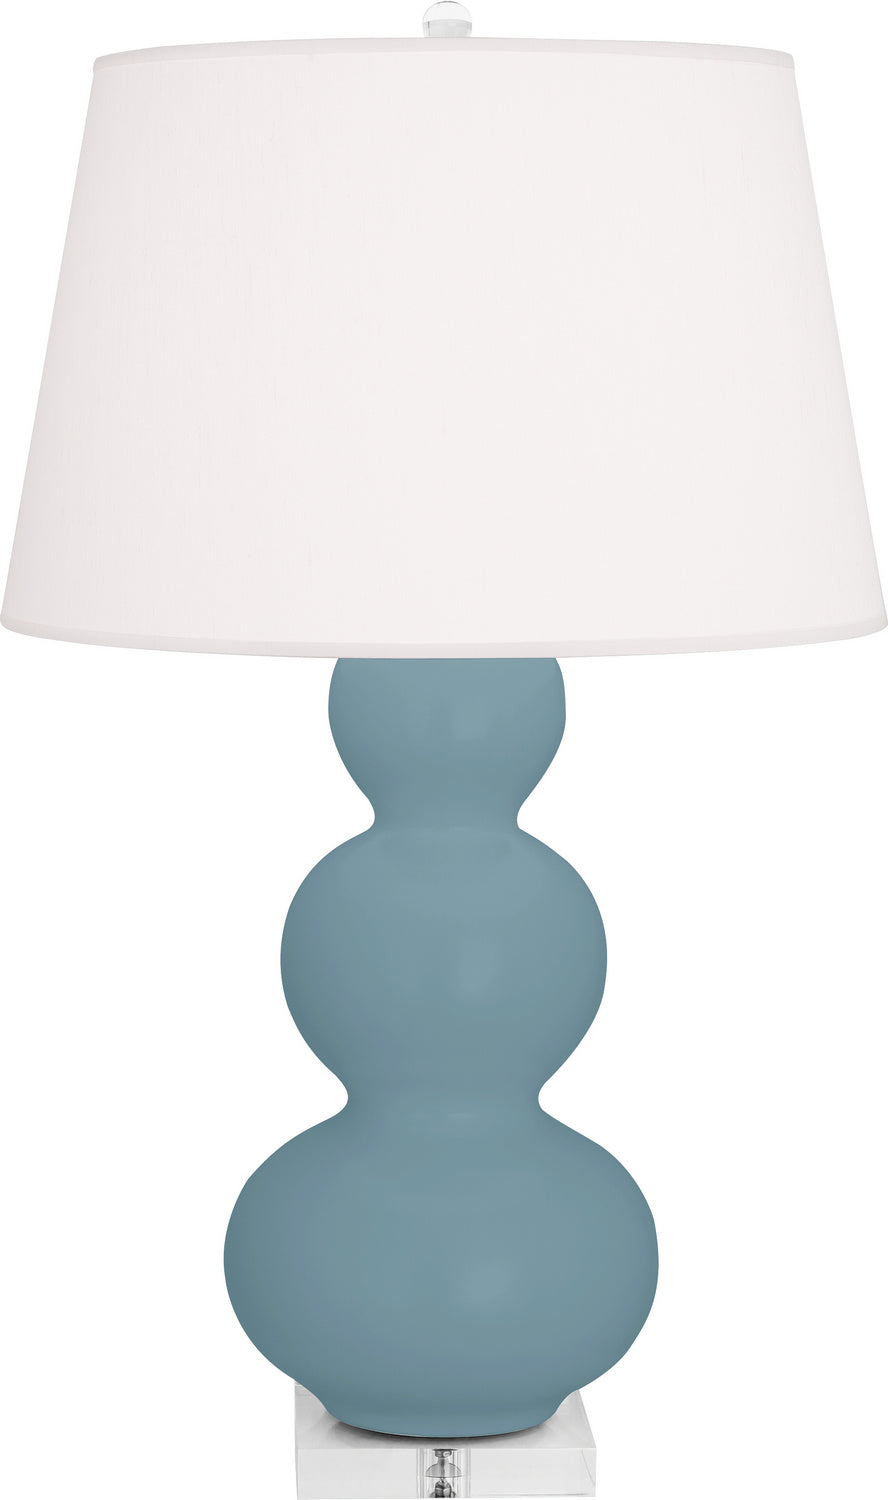 Robert Abbey - One Light Table Lamp - Triple Gourd - Matte Steel Blue Glazed Ceramic w/Lucite Base- Union Lighting Luminaires Decor